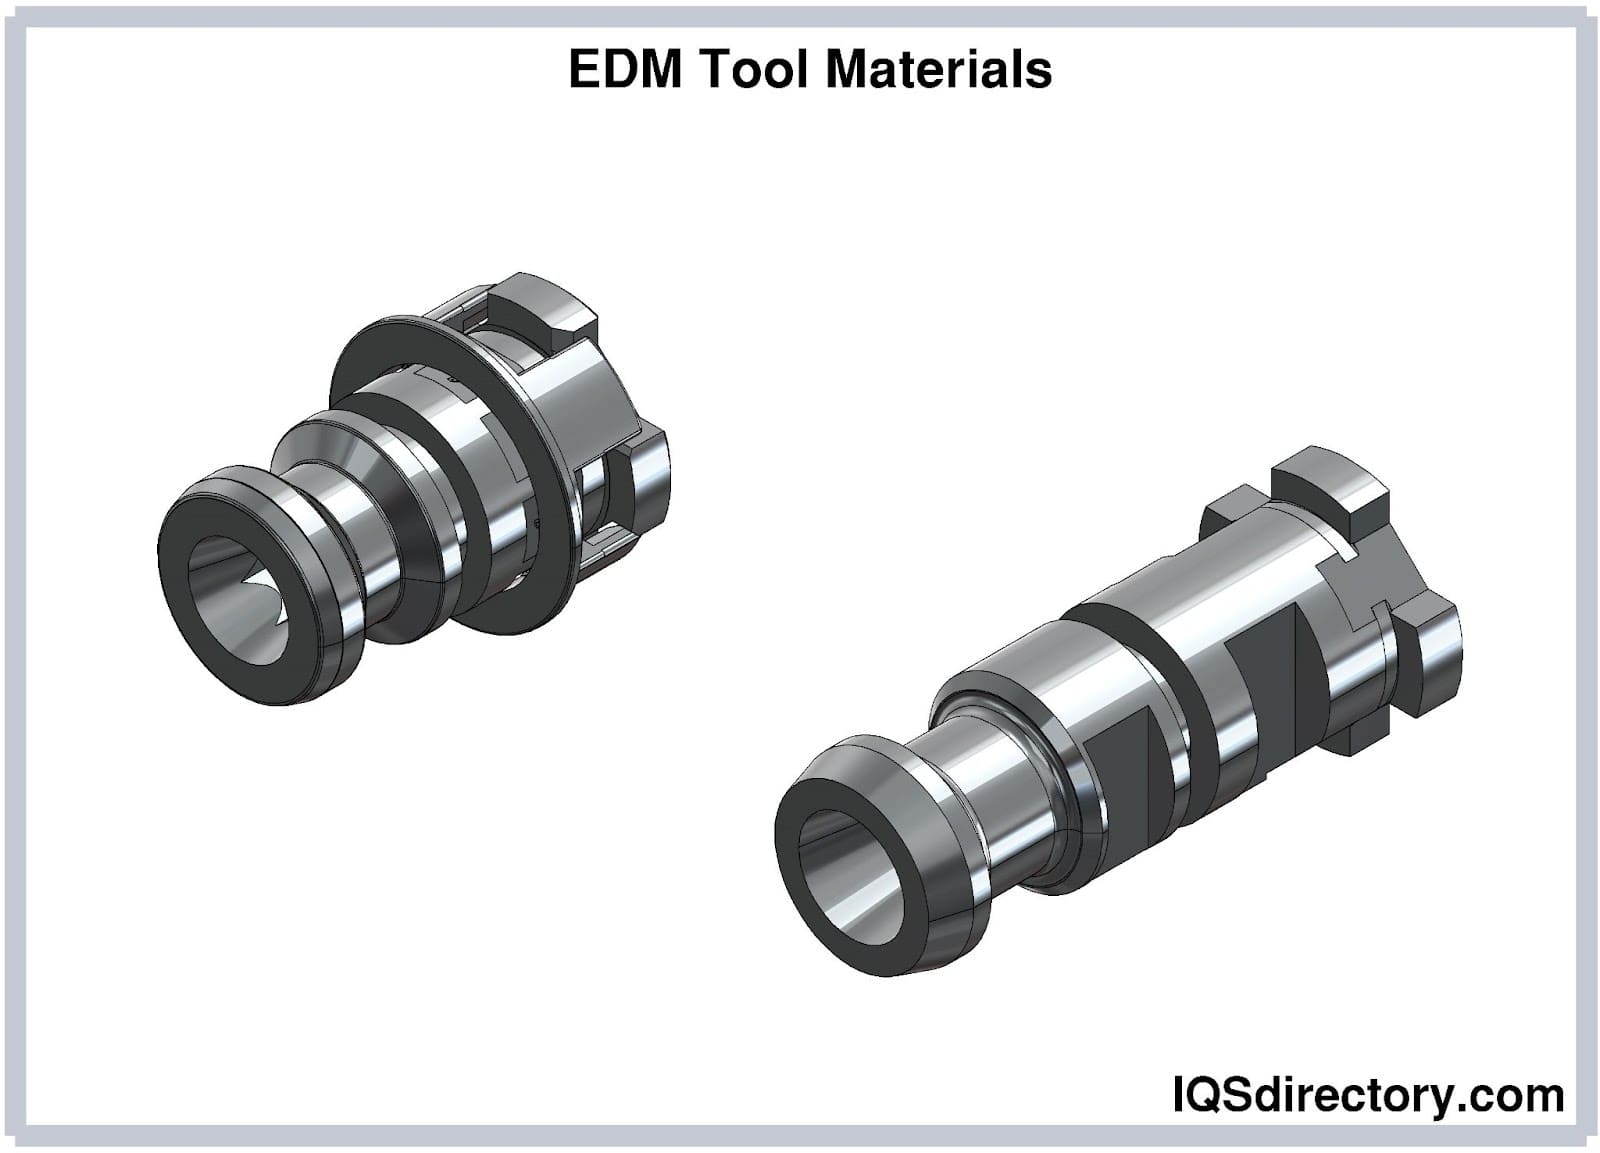 EDM Tool Materials